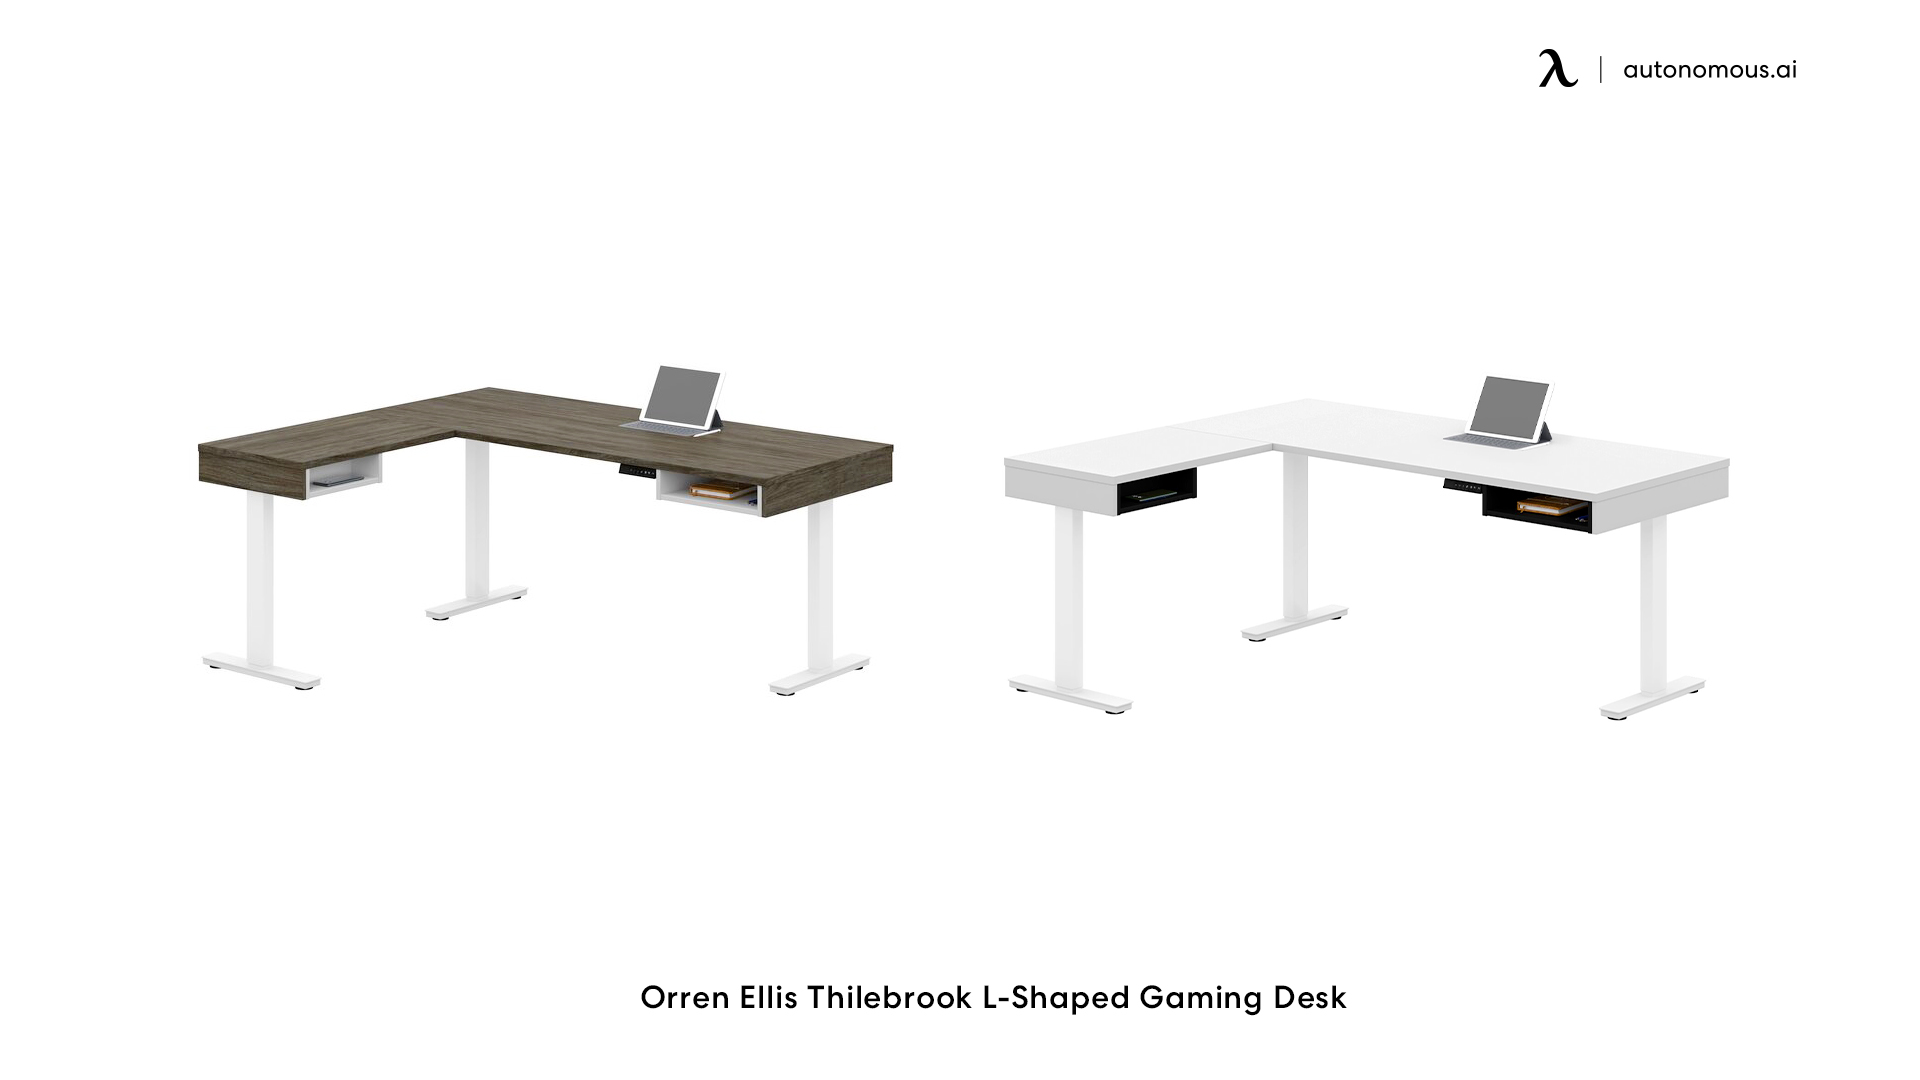 Orren Ellis Thilebrook L-Shaped Gaming Desk